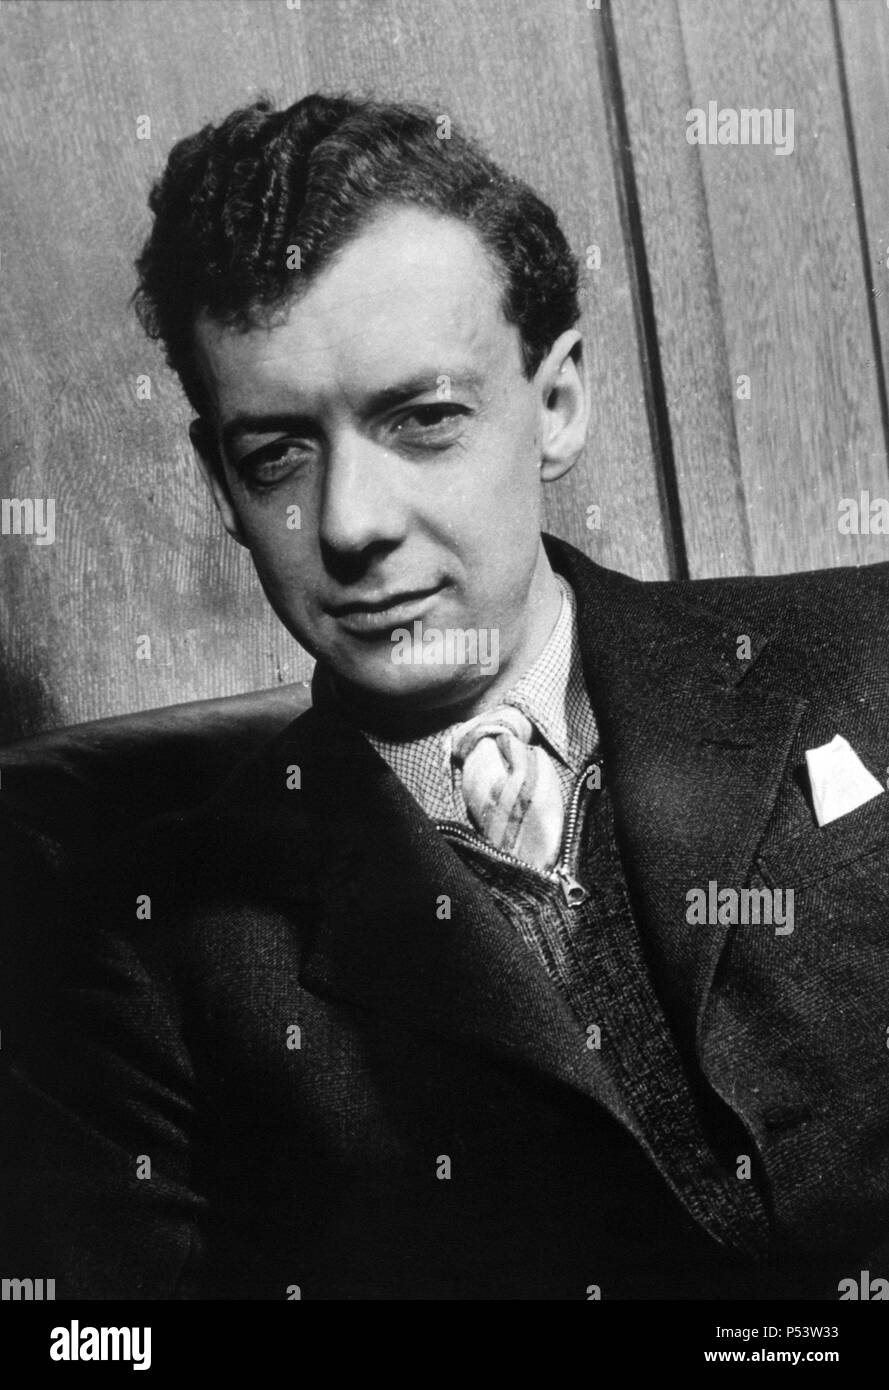 Benjamin Britten, compositor, director de orquesta y pianista británico. Stock Photo